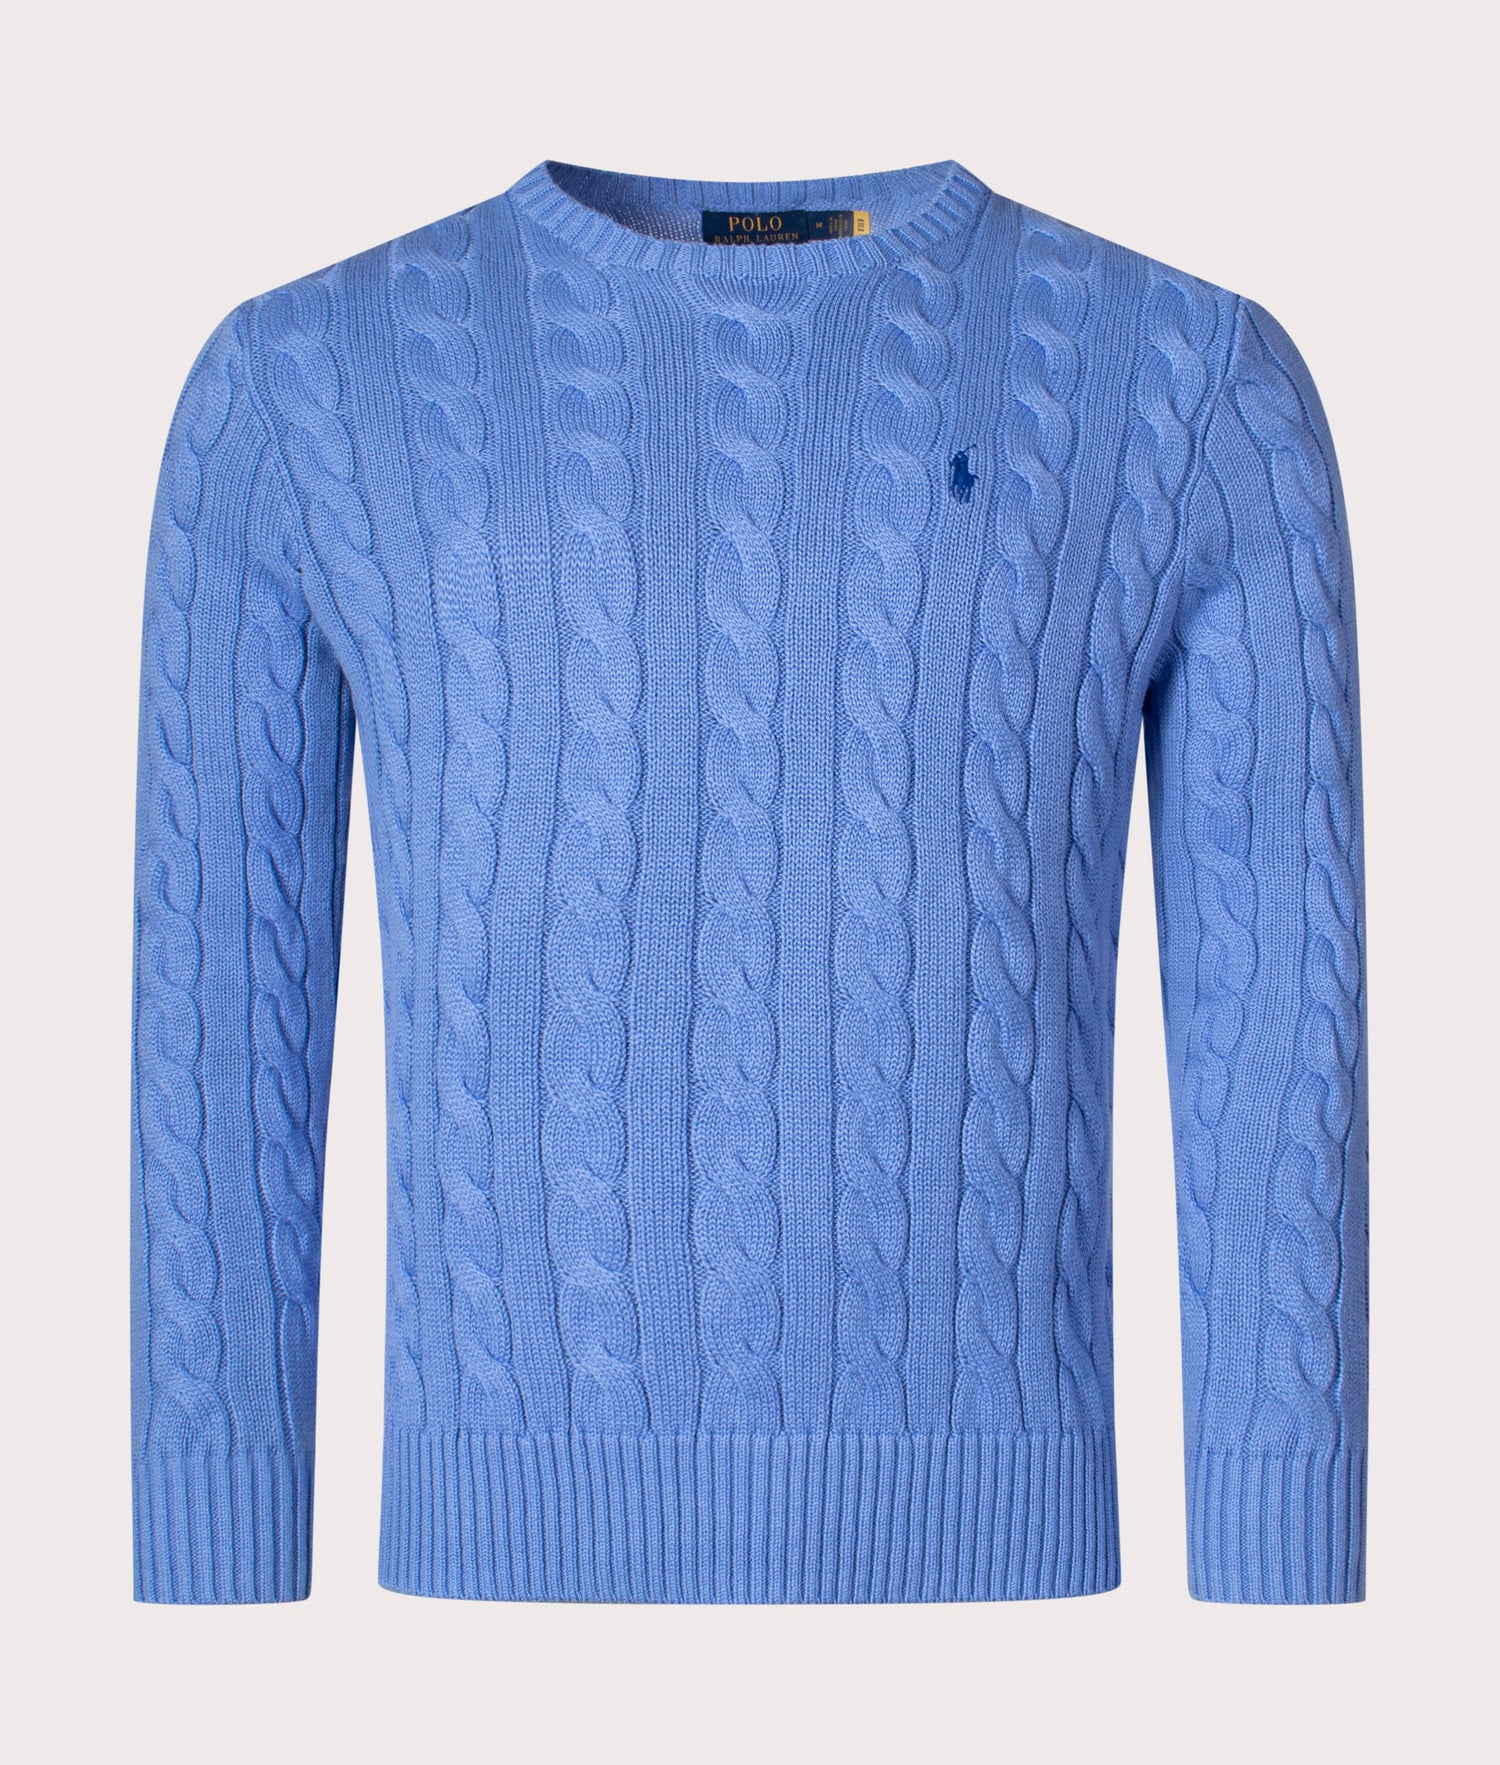 Cable Knit Cotton Jumper Blue, Polo Ralph Lauren